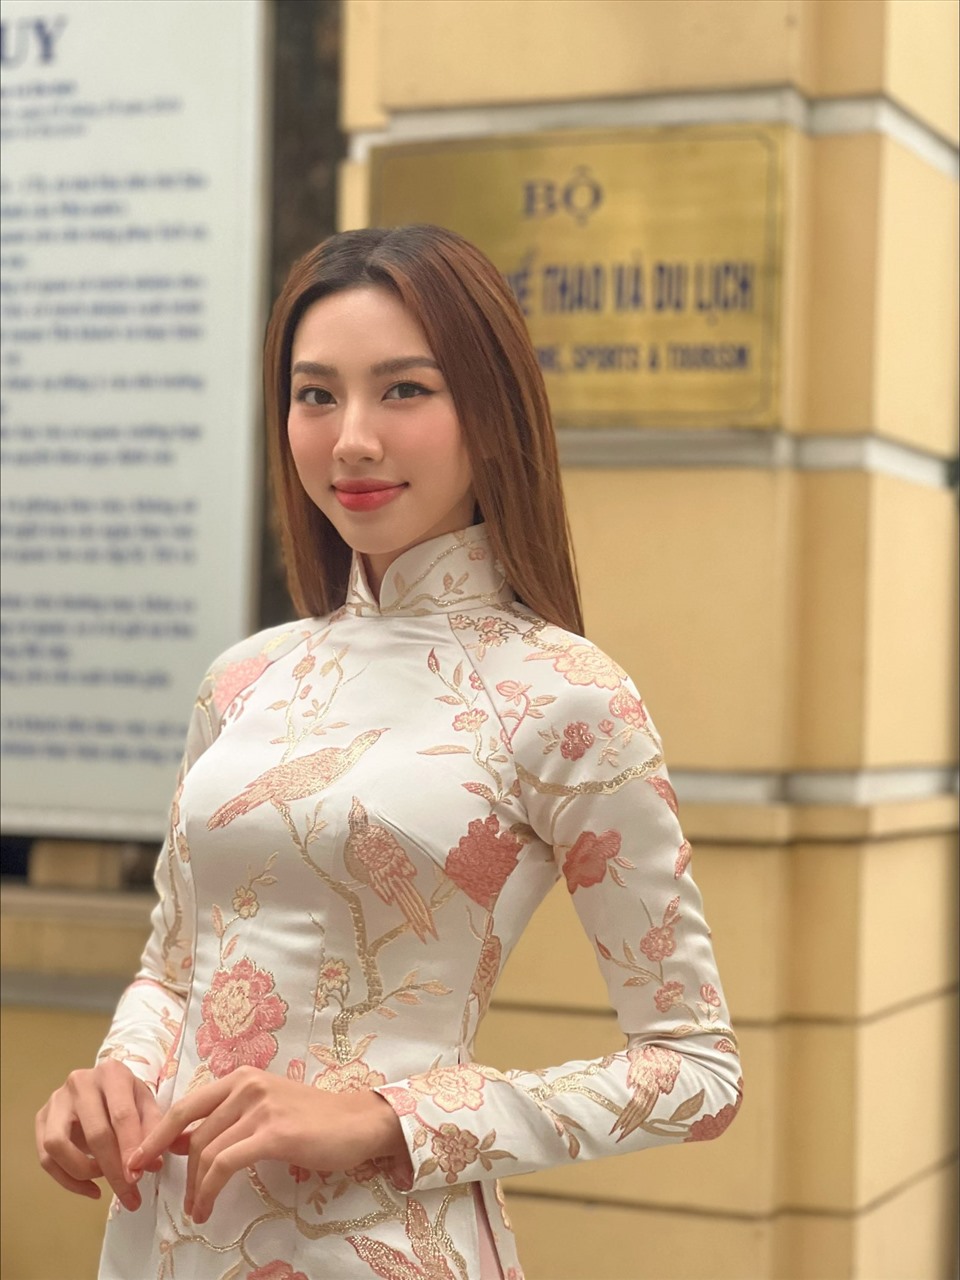 Miss Grand International 2021 Nguyễn Thúc Thuỳ Tiên sẽ bắt đầu các hoạt động tại Việt Nam sau khi hoàn thành cách ly theo quy định. Ảnh: NVCC.